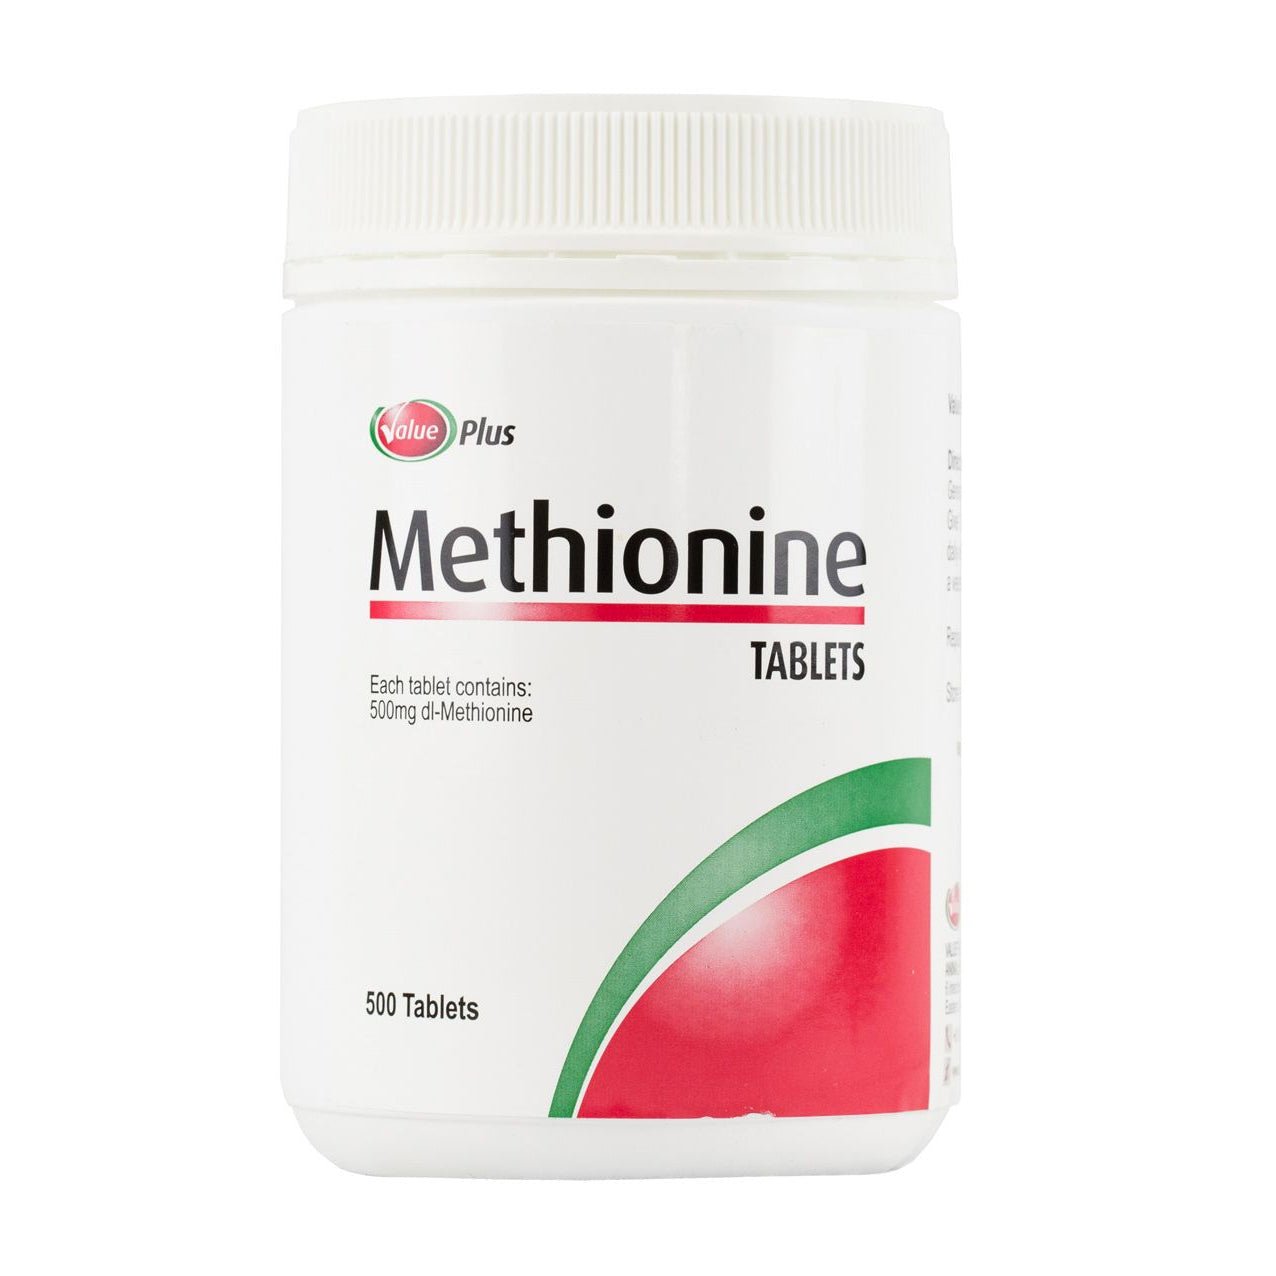 Value Plus Methionine Tablet 500's